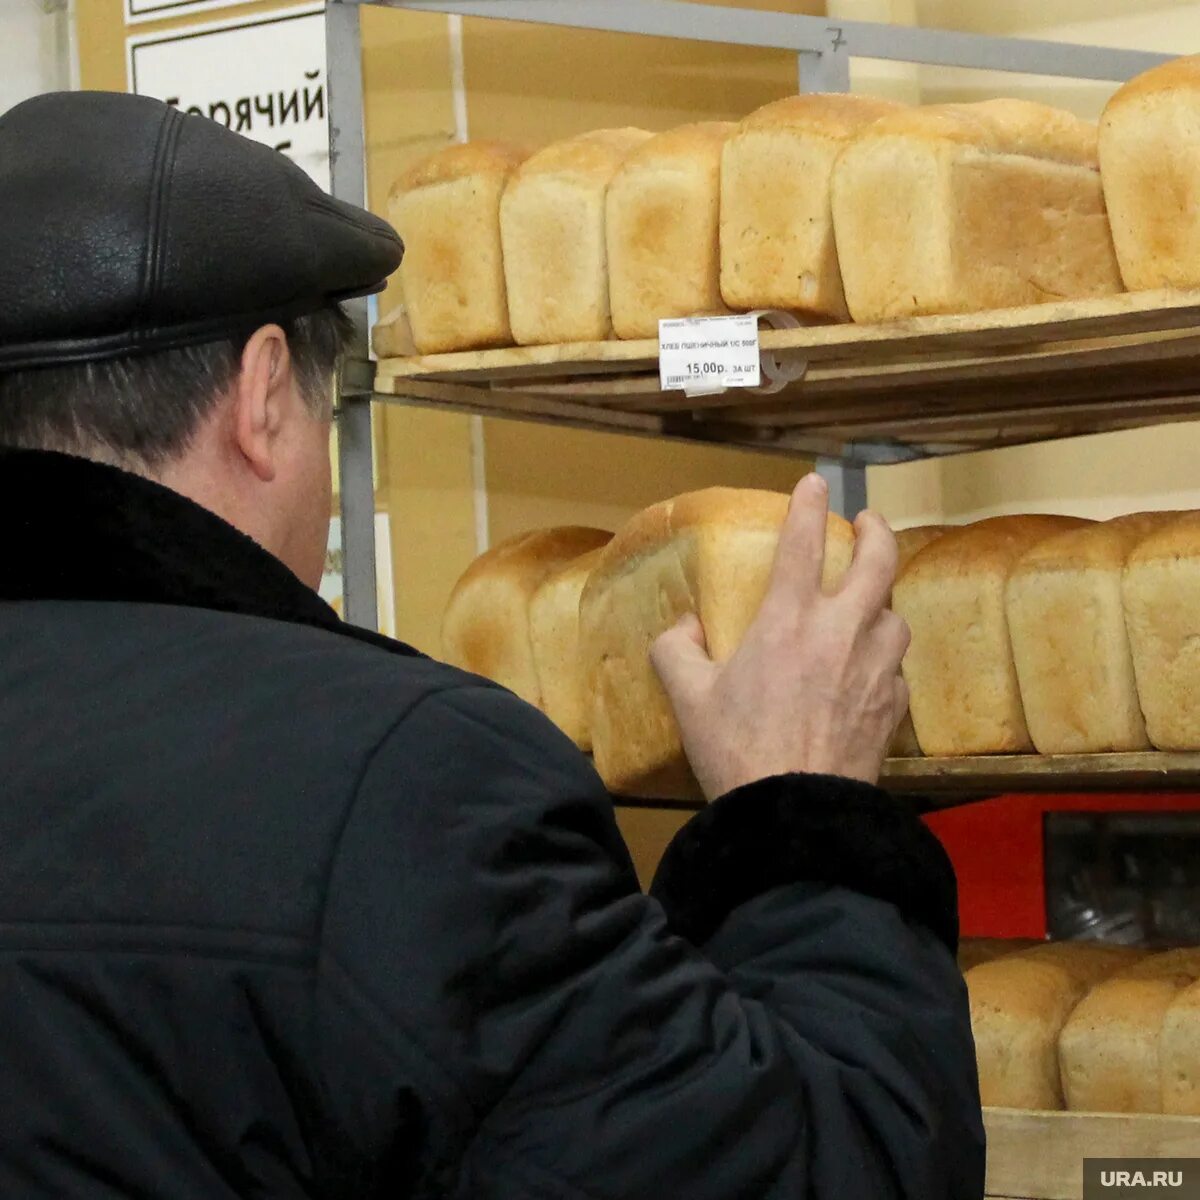 Человек идет за хлебом. Хлеб в магазине. Хлеб в России. Хлебный магазин. Мужик с хлебом в магазине.